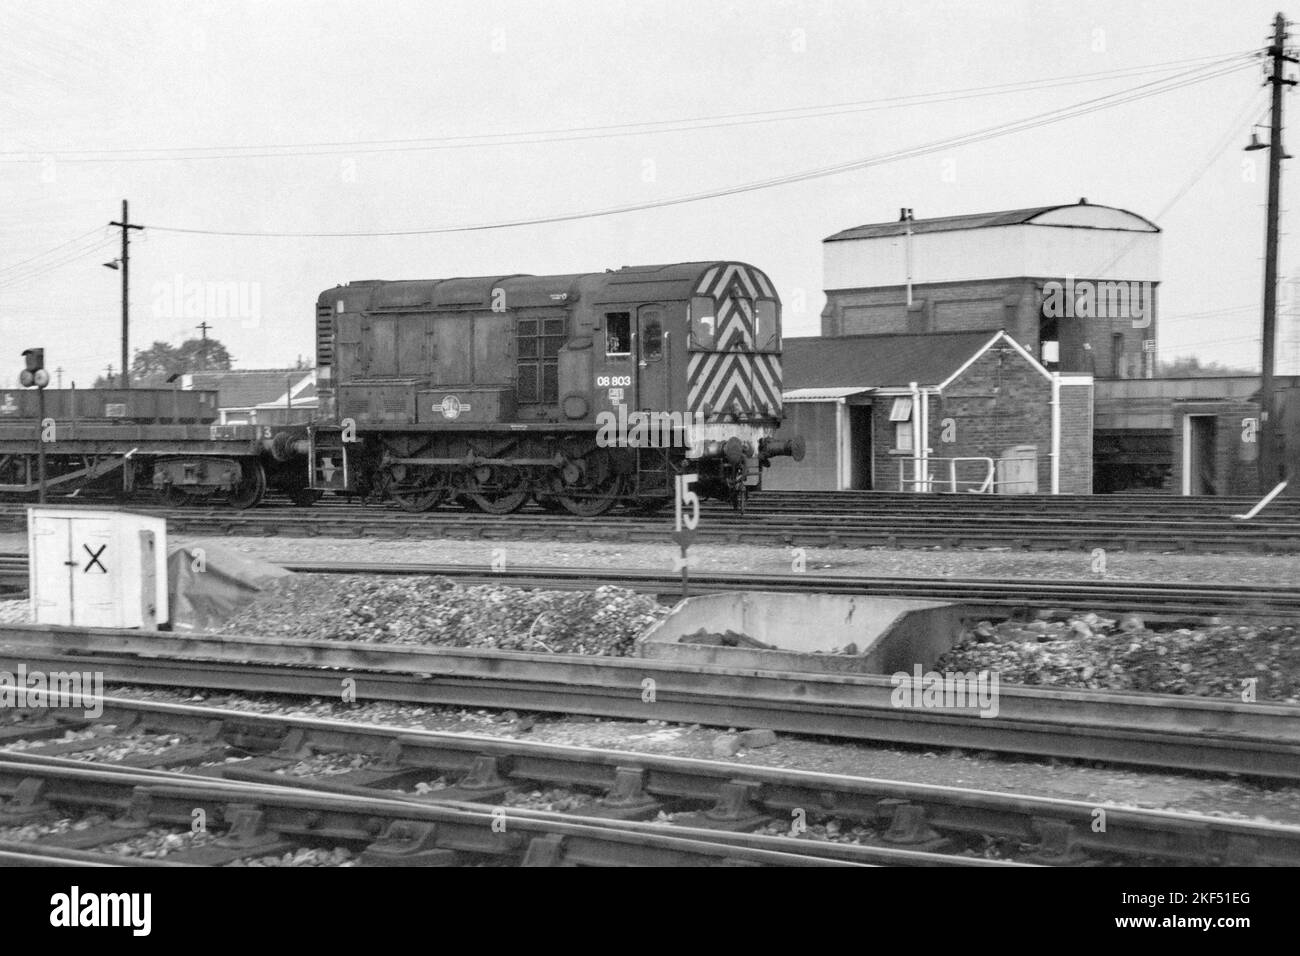 originale british rail diesel locomotive classe 08 numero 08803 shunter su shunting servizio didcot fine 1970s inizio 1980s Foto Stock